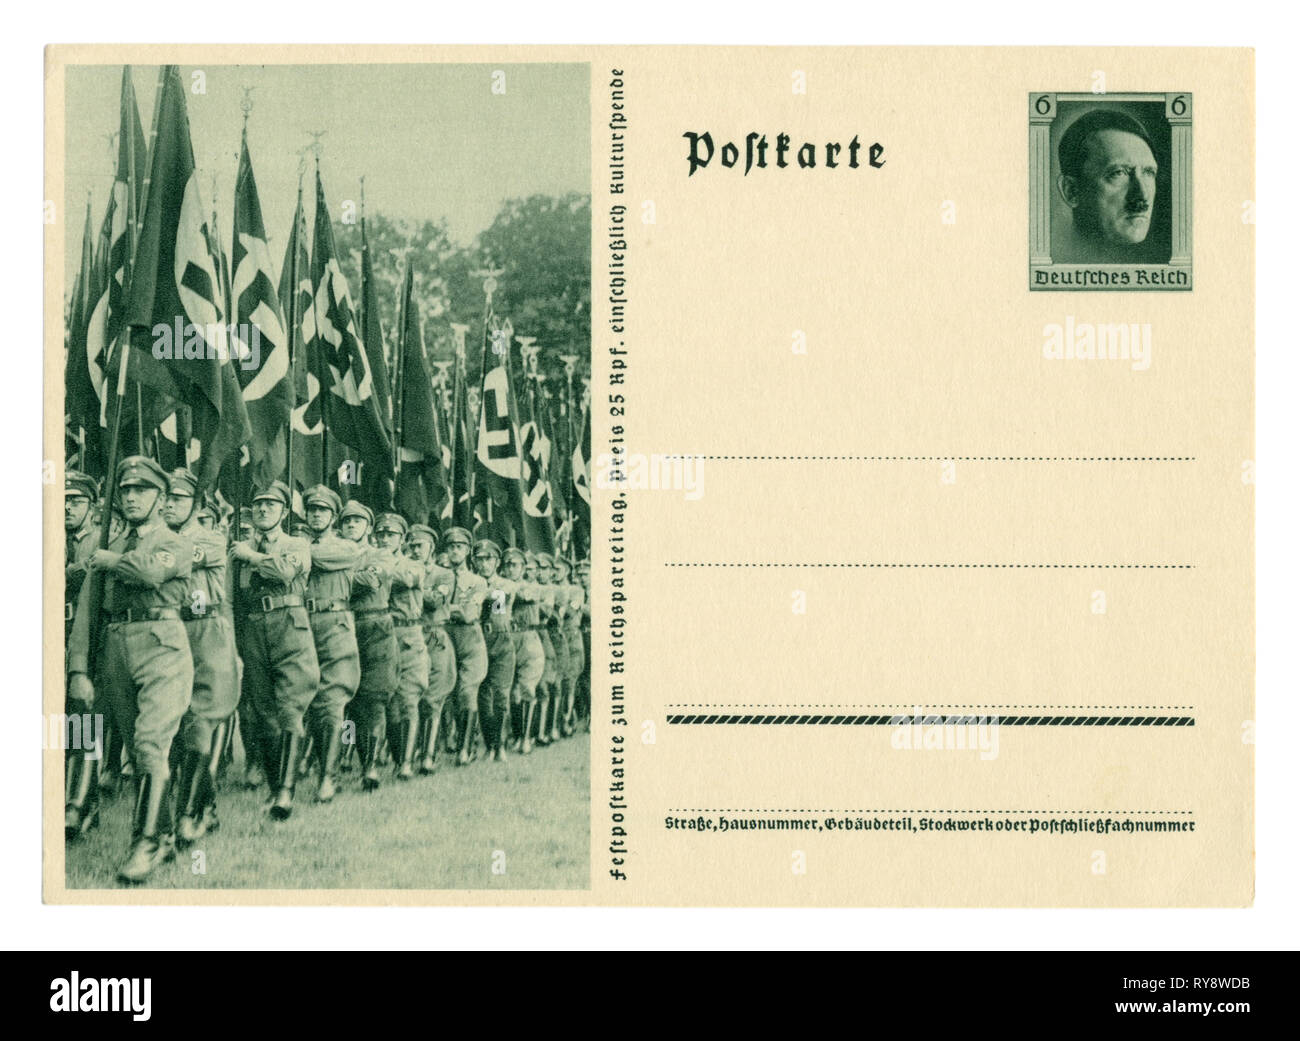 Carte postale historique allemand : le 9e congrès du NSDAP à Nuremberg en 1937, les responsables politiques sur la marche avec des drapeaux. Allemagne Banque D'Images